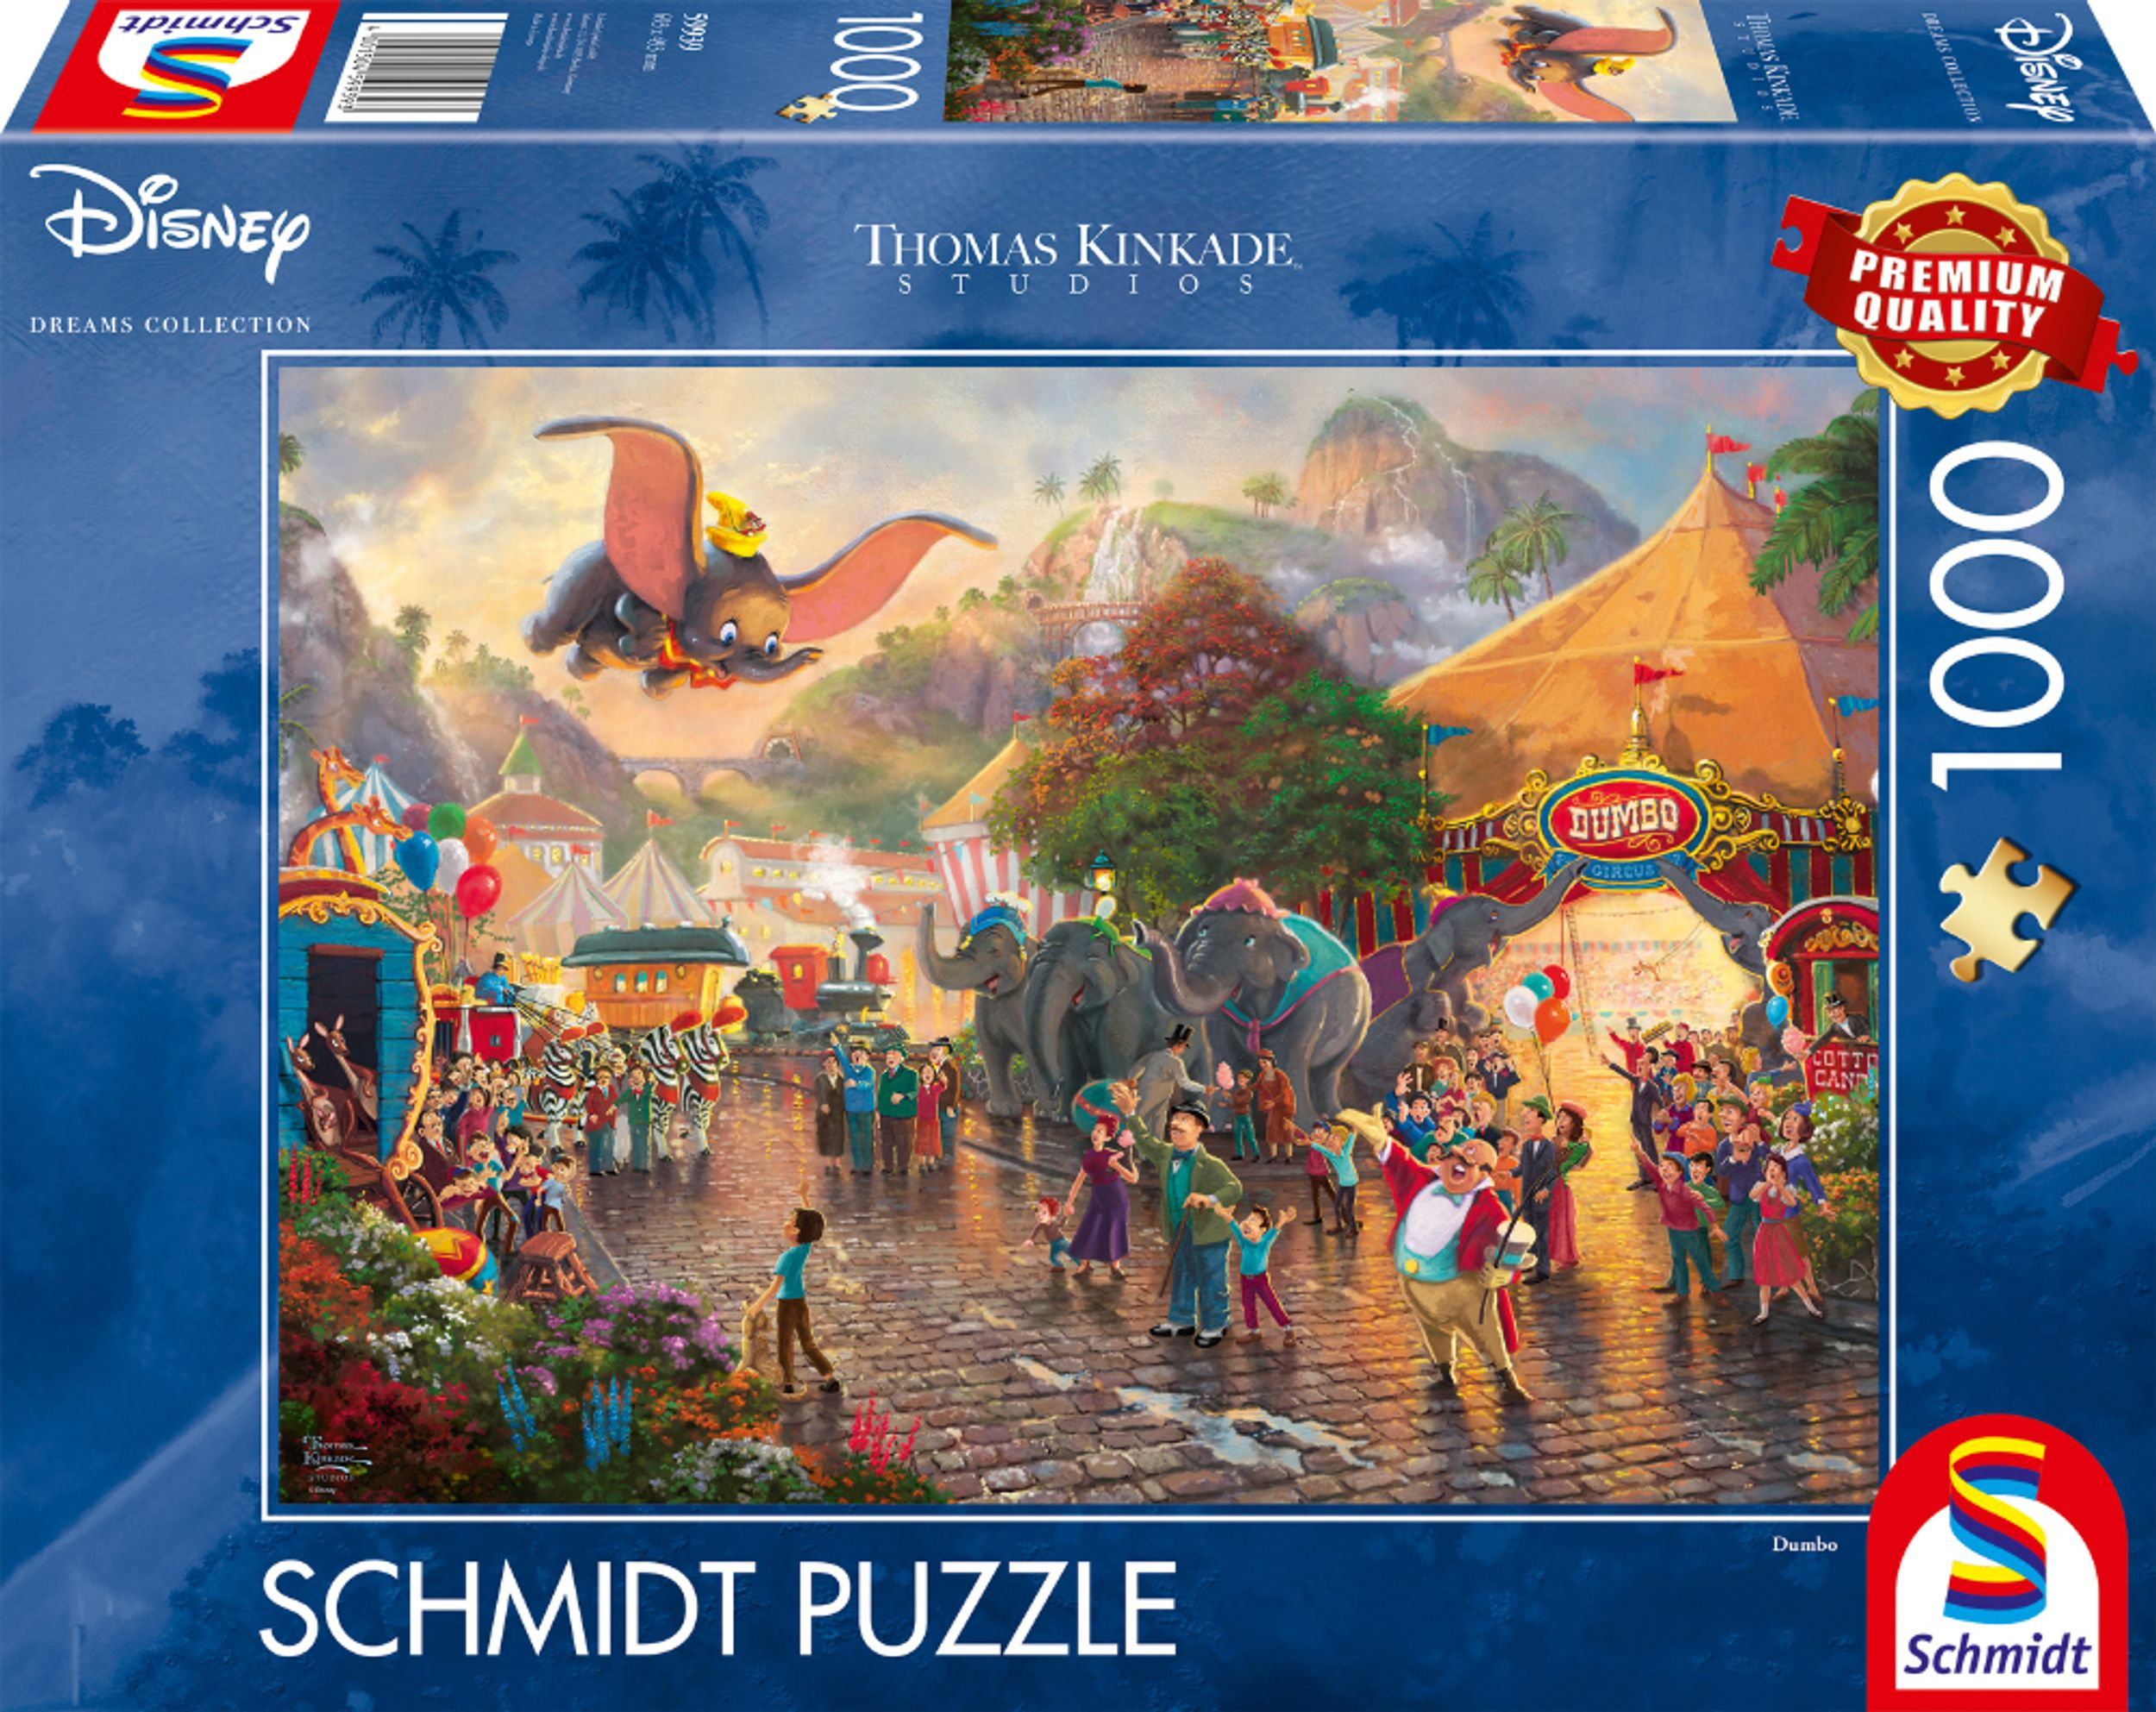 SCHMIDT SPIELE Dumbo Puzzle